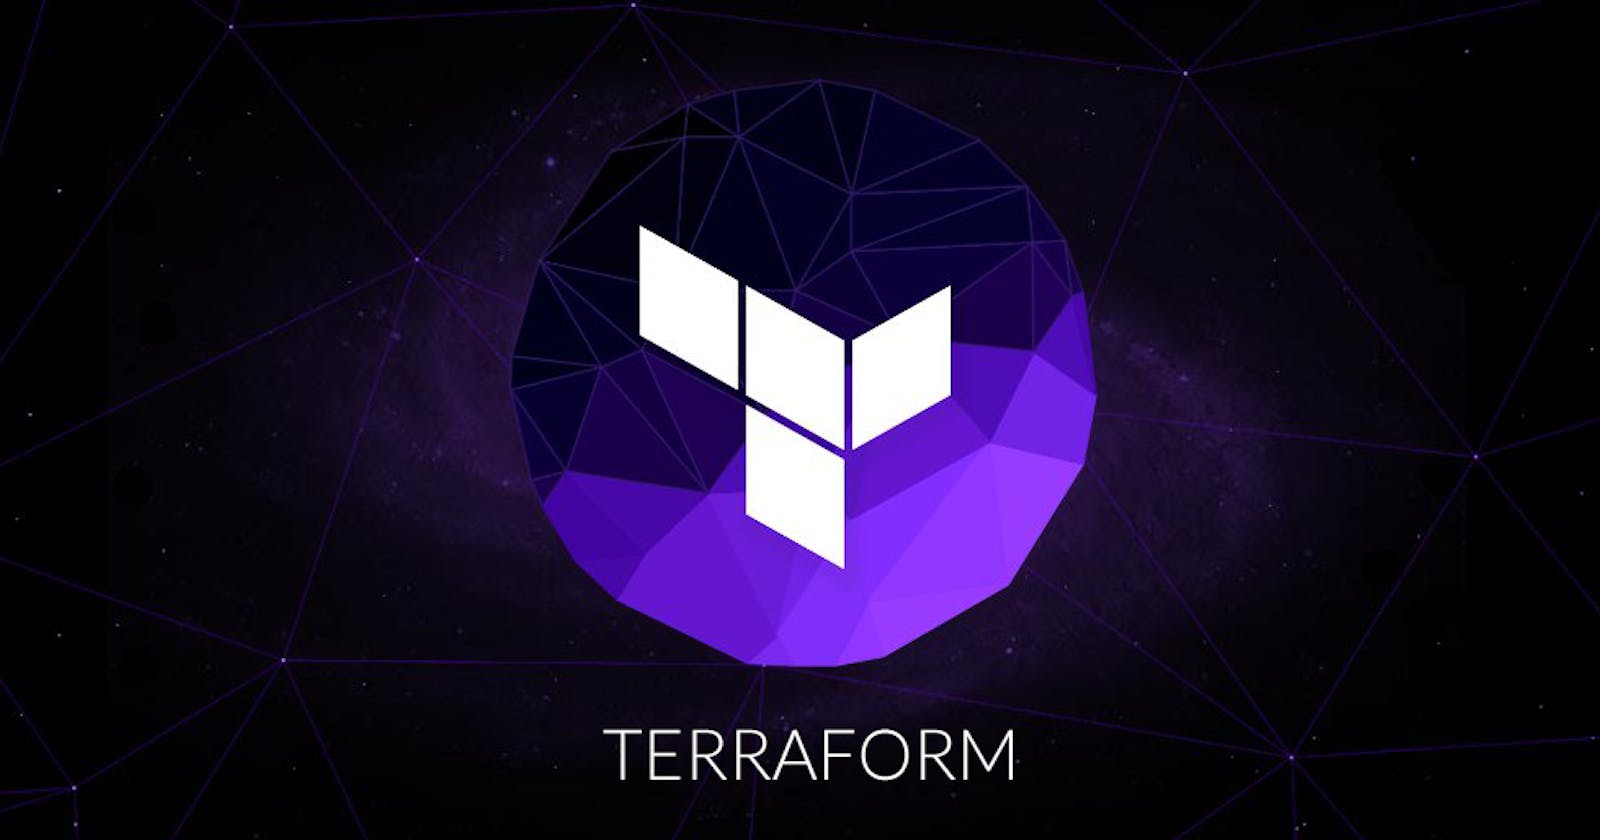 Deep Dive into Terraform - P2 
(Terraform Commands and Installation)